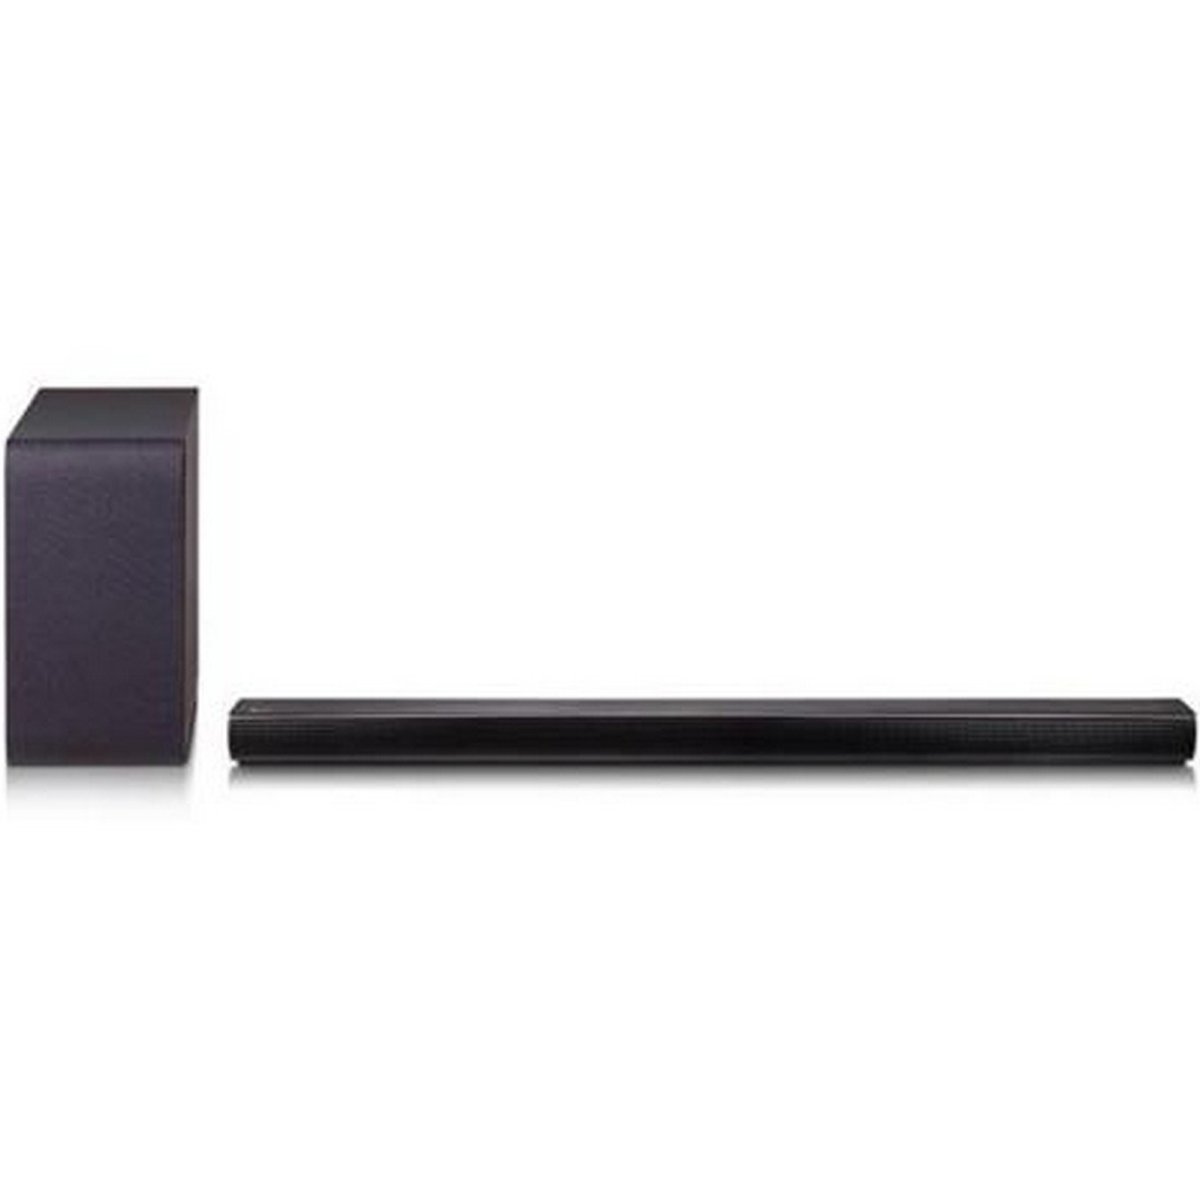 LG 2.1 Sound Bar SH5B 320W Black